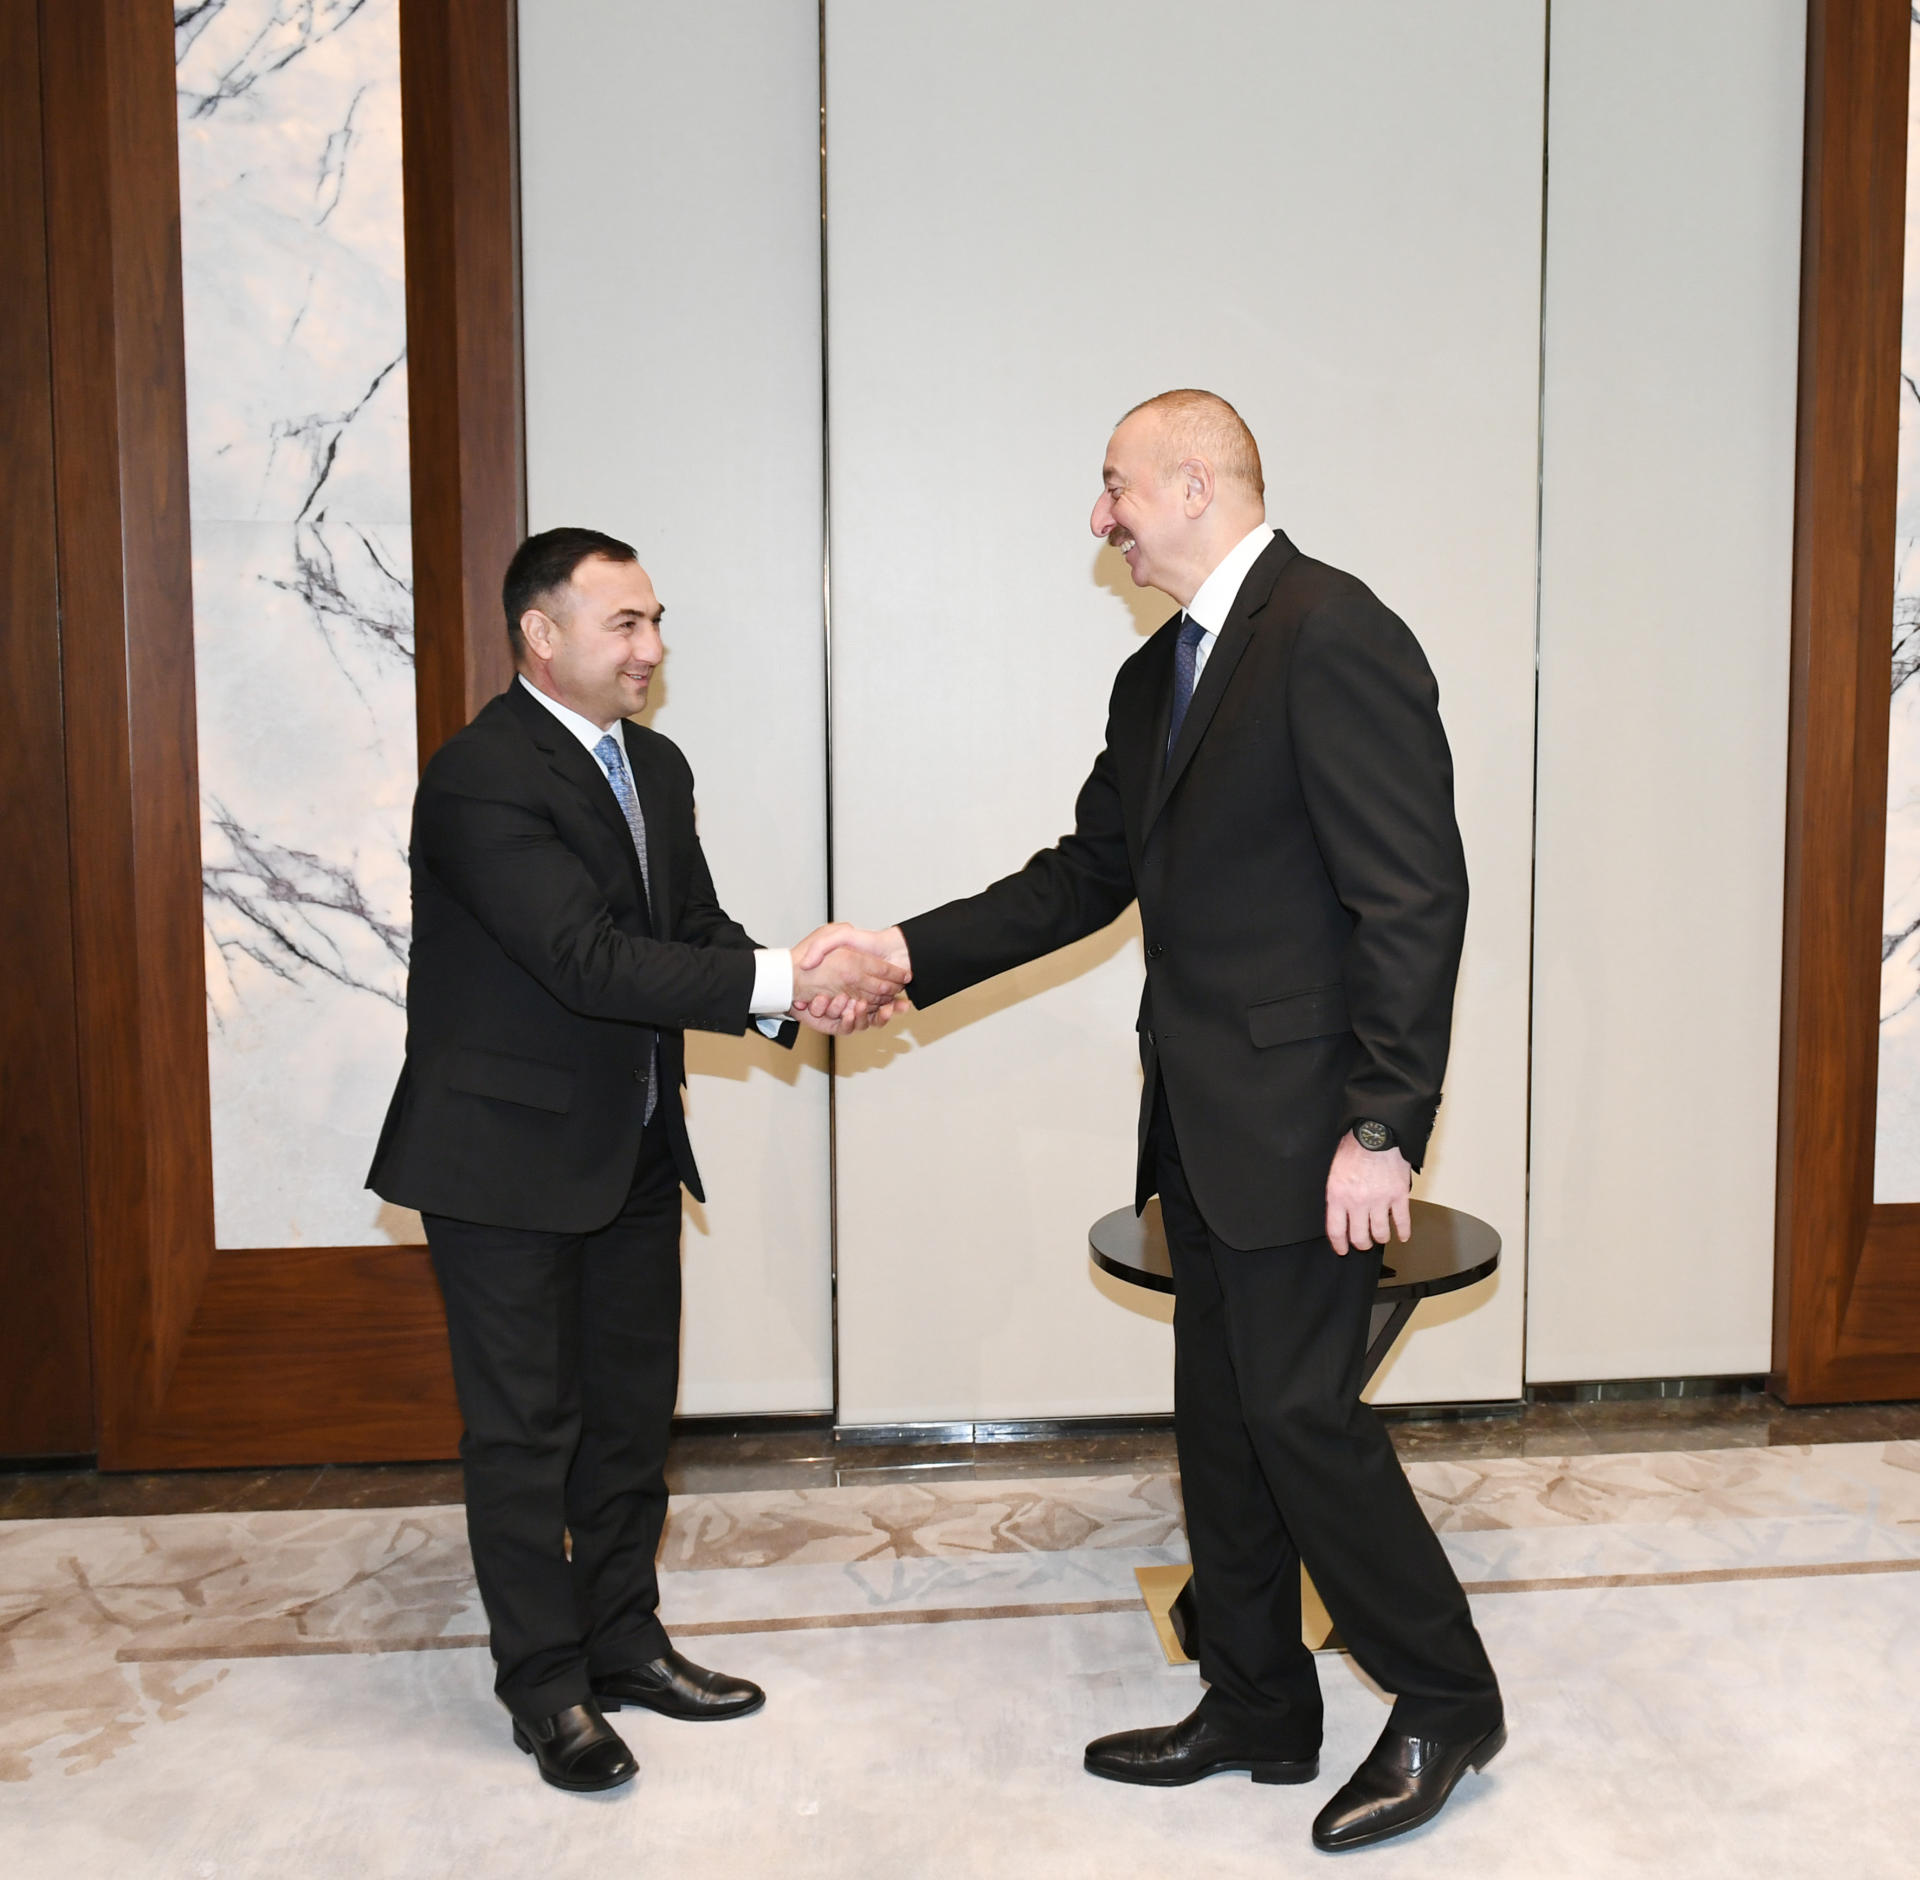 Президент Ильхам Алиев и Первая леди Мехрибан Алиева встретились с проживающими в Украине соотечественниками Сабиром и Умудом Шириновыми (ФОТО)